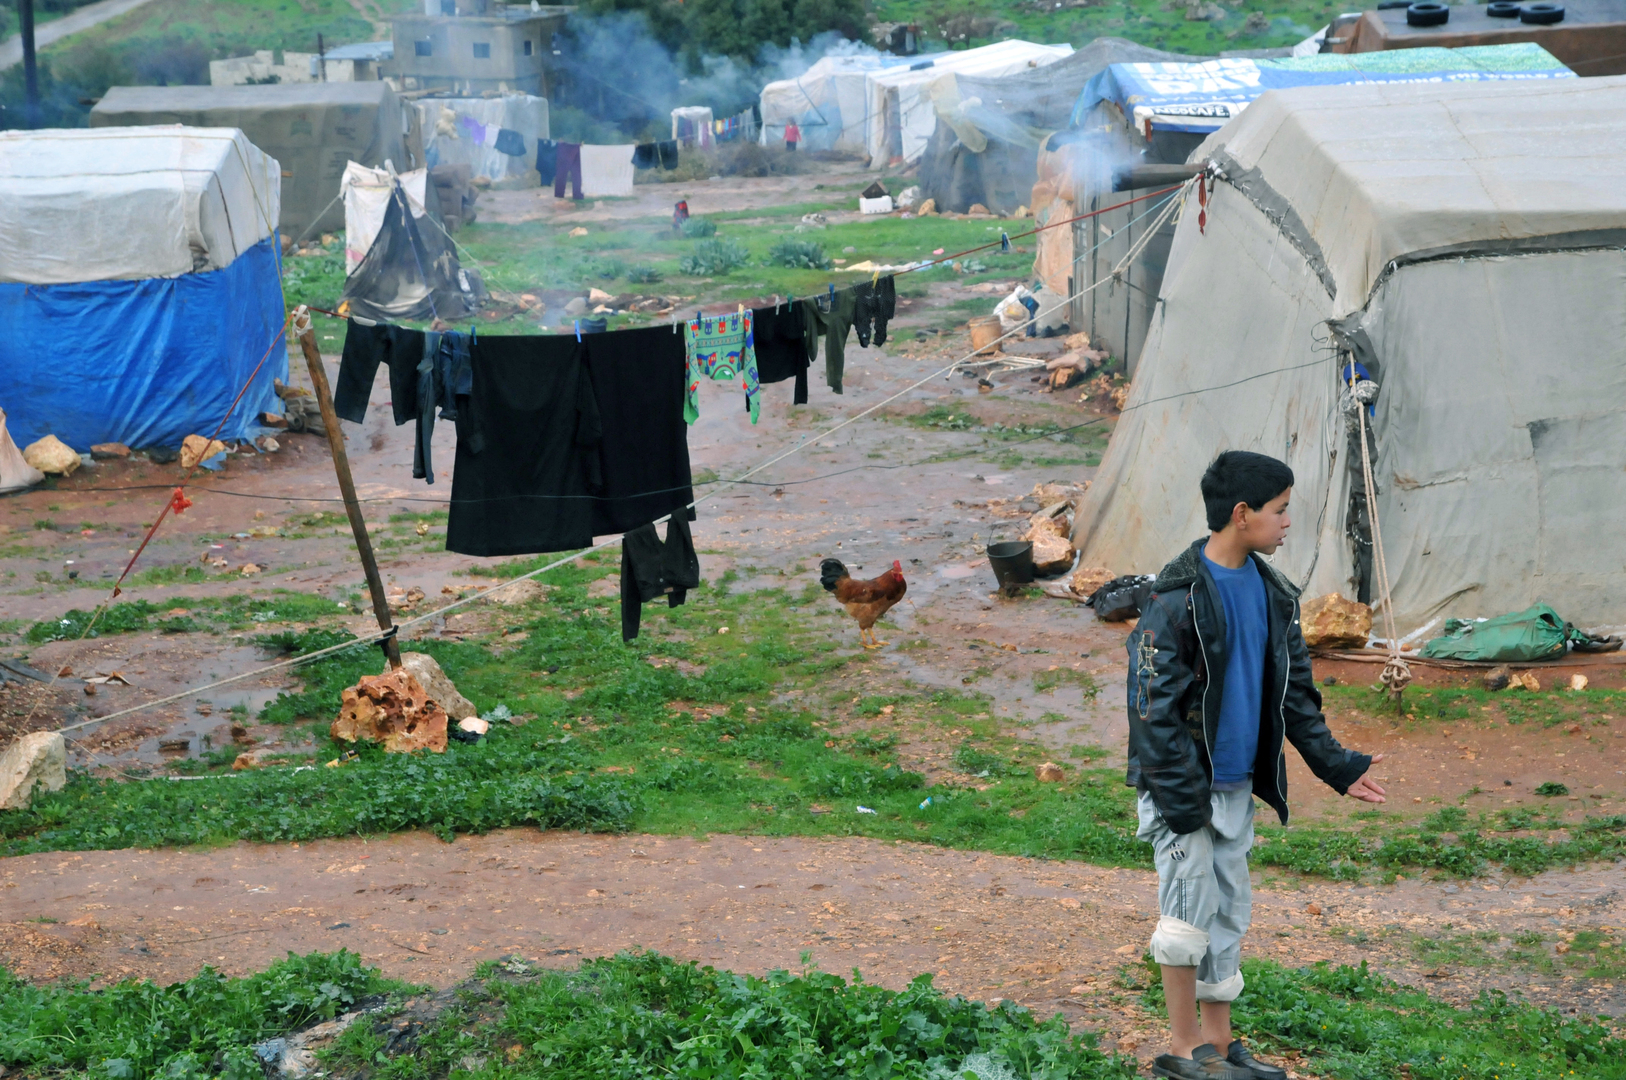 لجنة شؤون المهجرين في لبنان: المساعي جارية مع سوريا والسفراء والجهات الدولية لعودة آمنة للاجئين